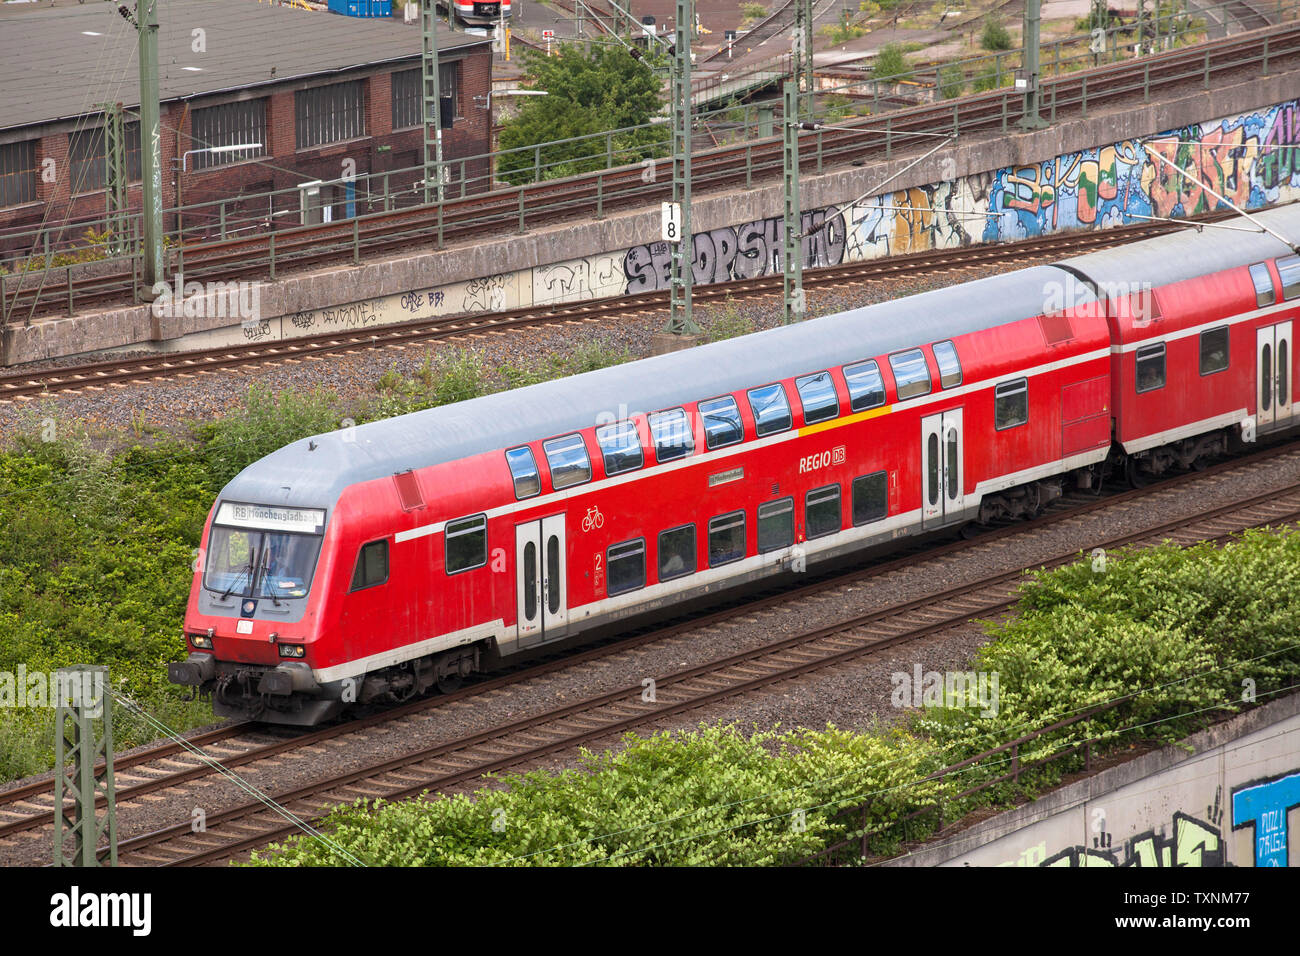 Regionalbahn Regionalbahnen im Stadtteil Deutz, Köln, Deutschland. Regionallbahn im Stadtteil Deutz, Köln, Deutschland. Stockfoto